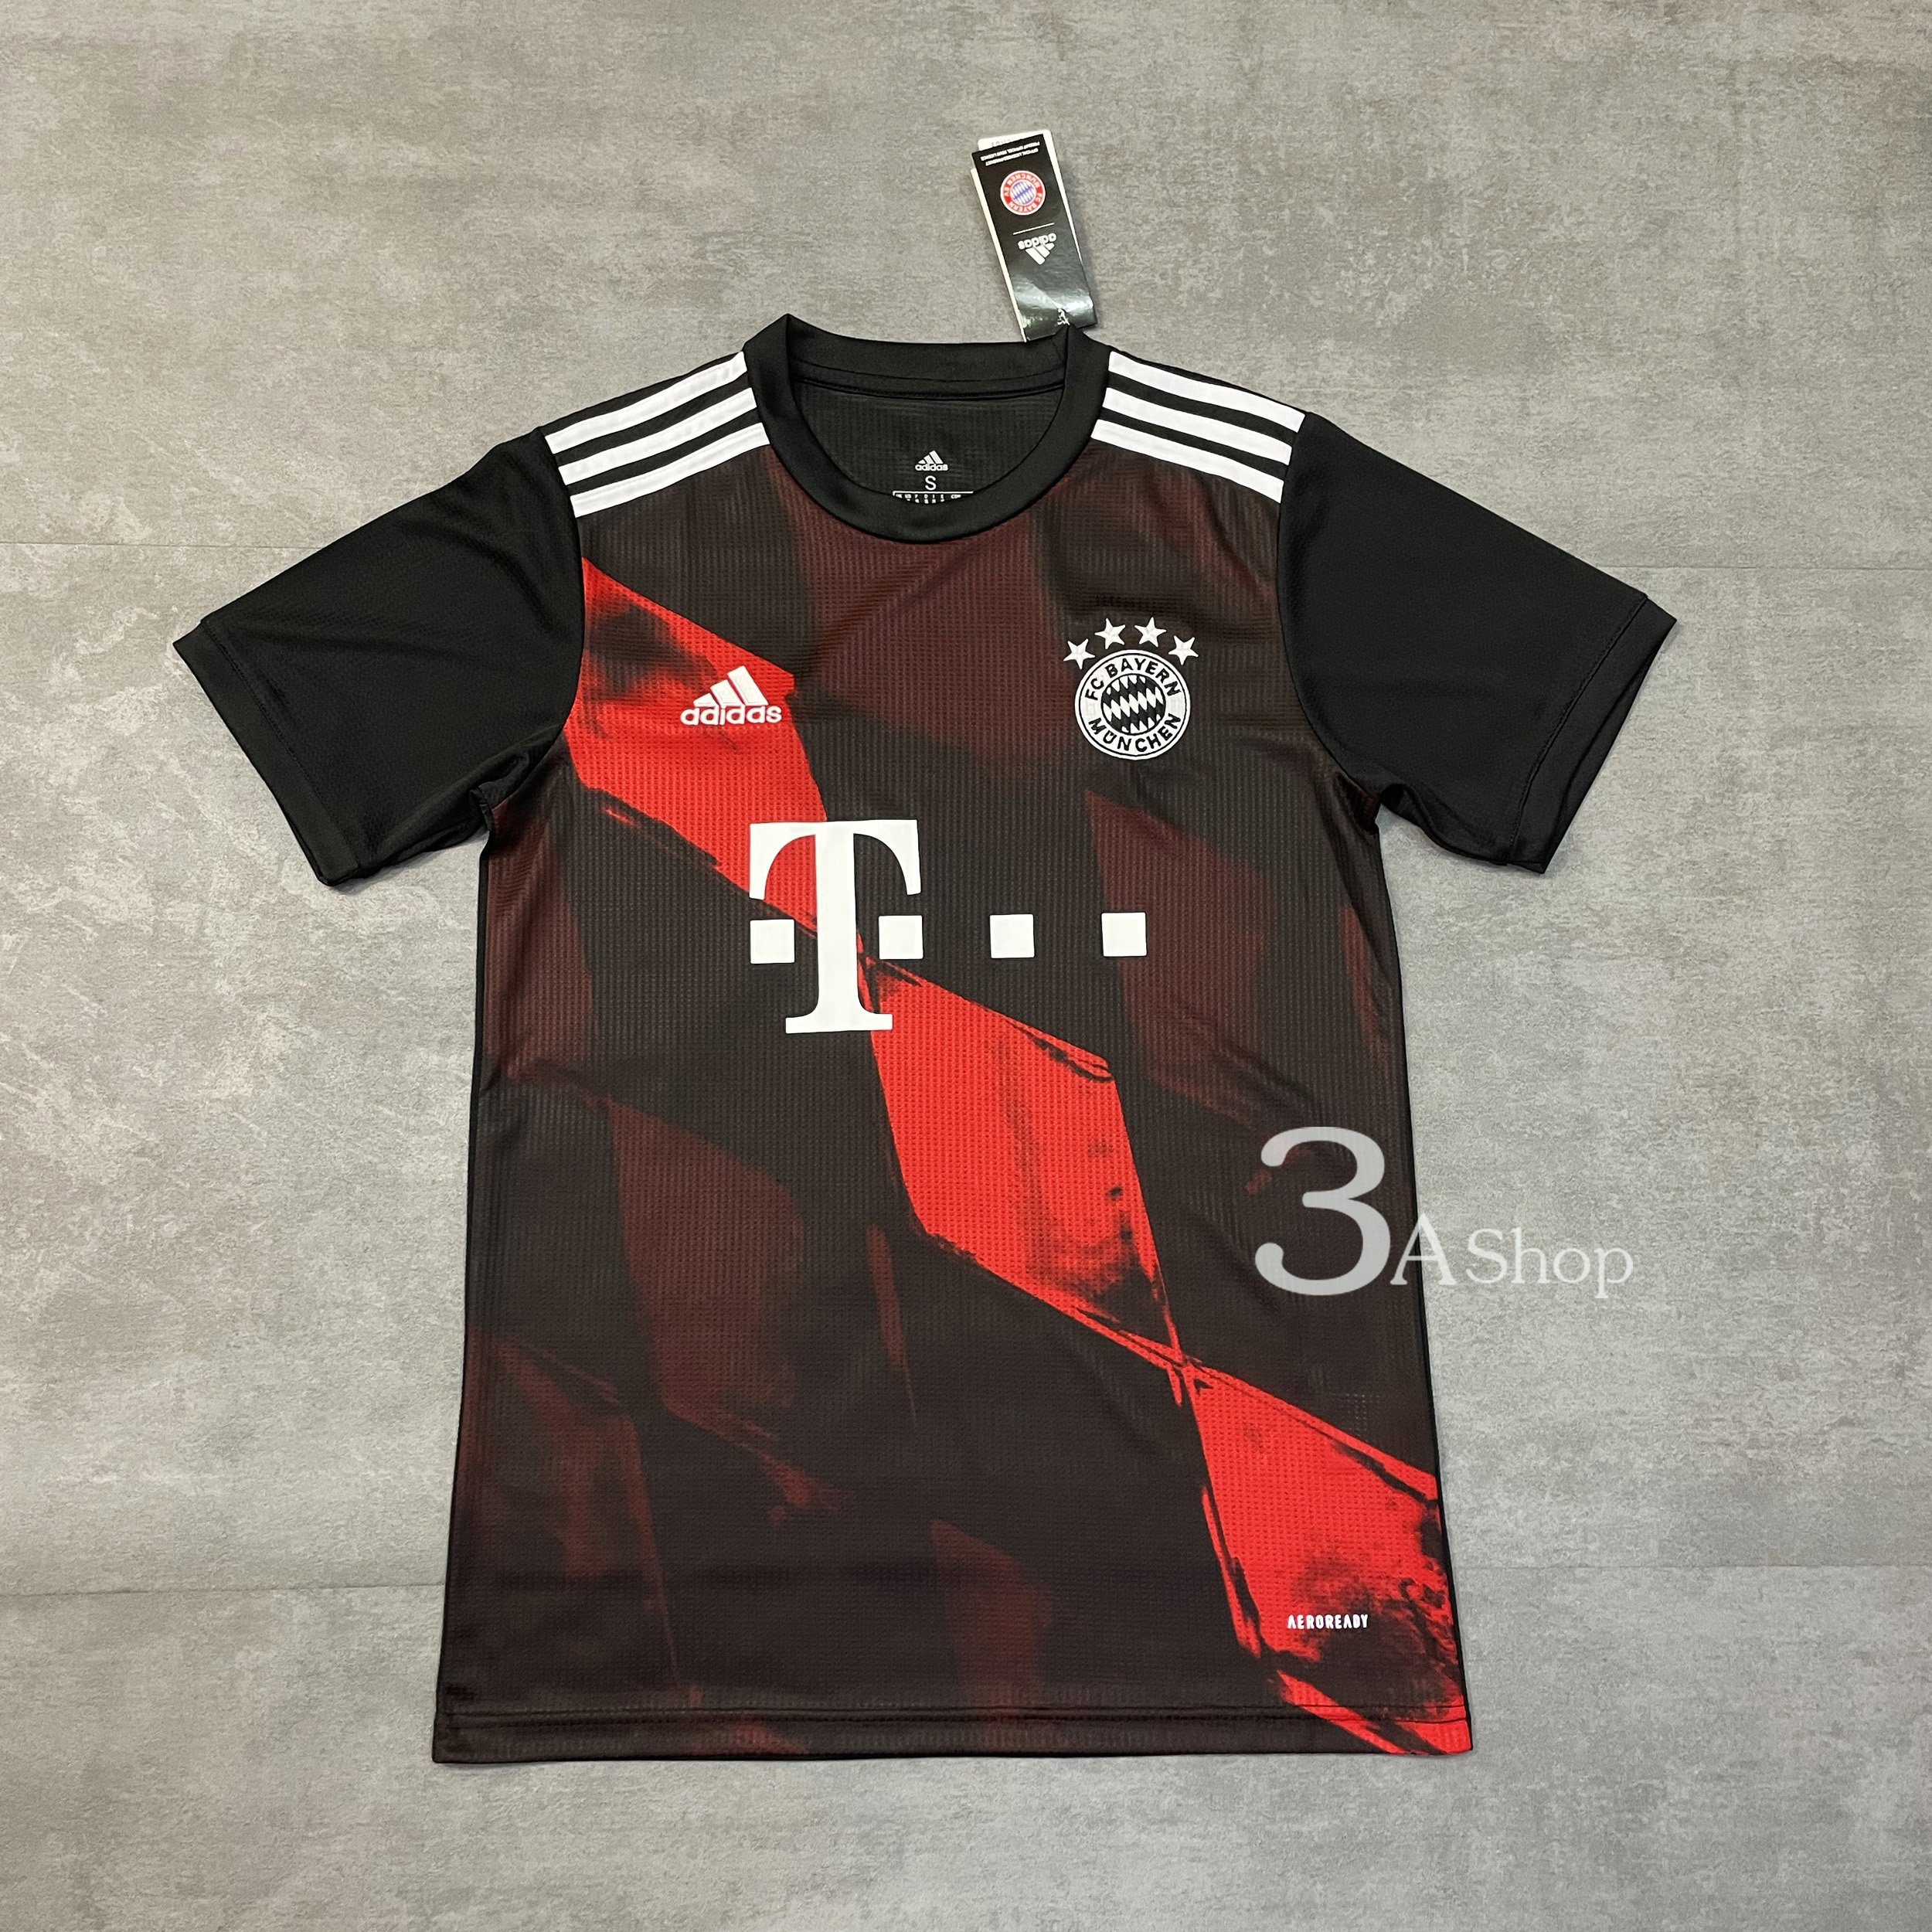 Bayern rd3 20/21 FOOTBALL SHIRT SOCCER  เสื้อบอล เสื้อฟุตบอลชาย เสื้อบอลชาย เสื้อฟุตบอล เสื้อกีฬาชาย2021 เสื้อทีมบาเยิร์น ชุดที่ 3 ปี21 เกรด 3A